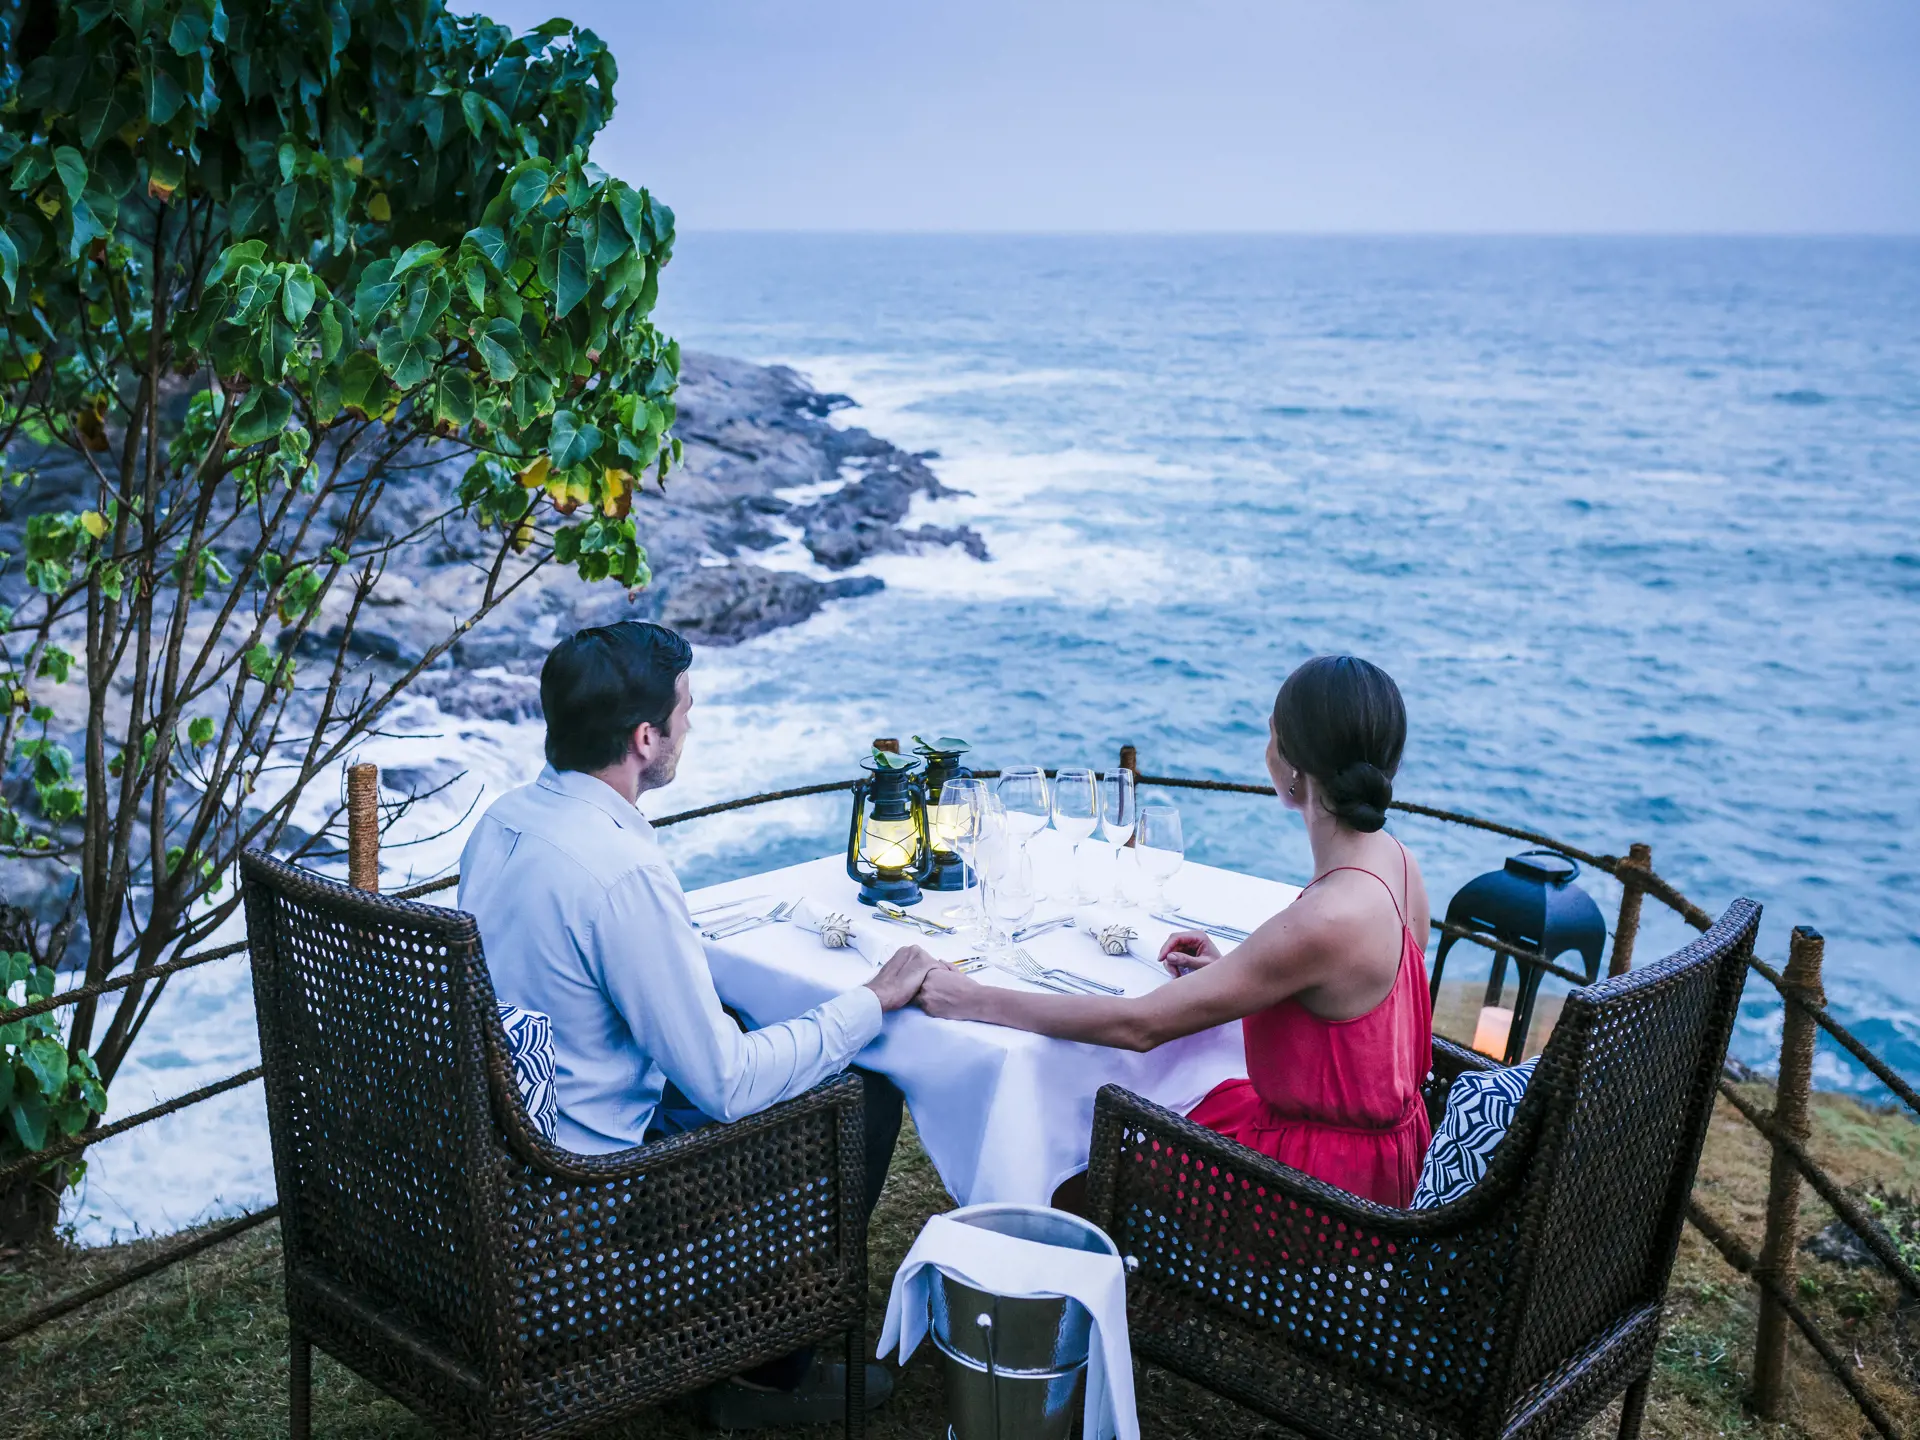 ROMANTIK - Er I til romantik, så kan I få det her - for eksempel ved middage i smukke omgivelser.